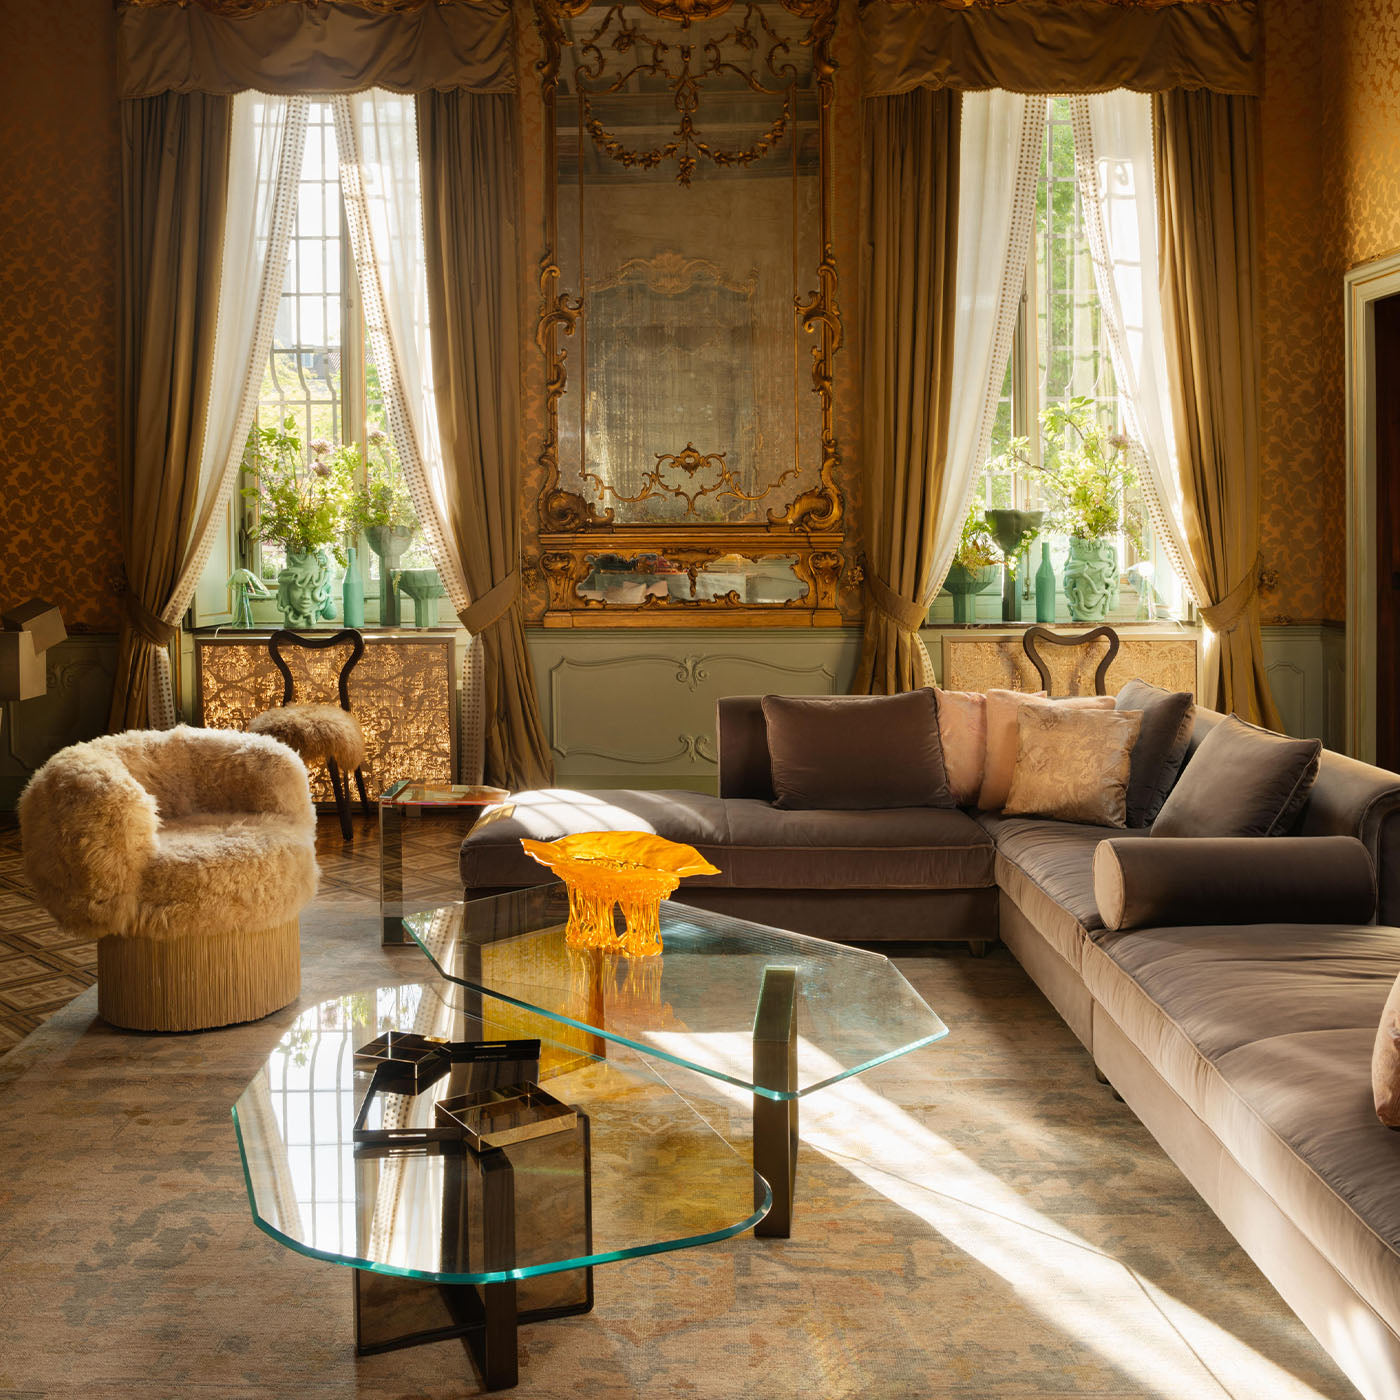 Portofino Gray Sofa by Stefano Giovannoni #1 - Alternative view 5